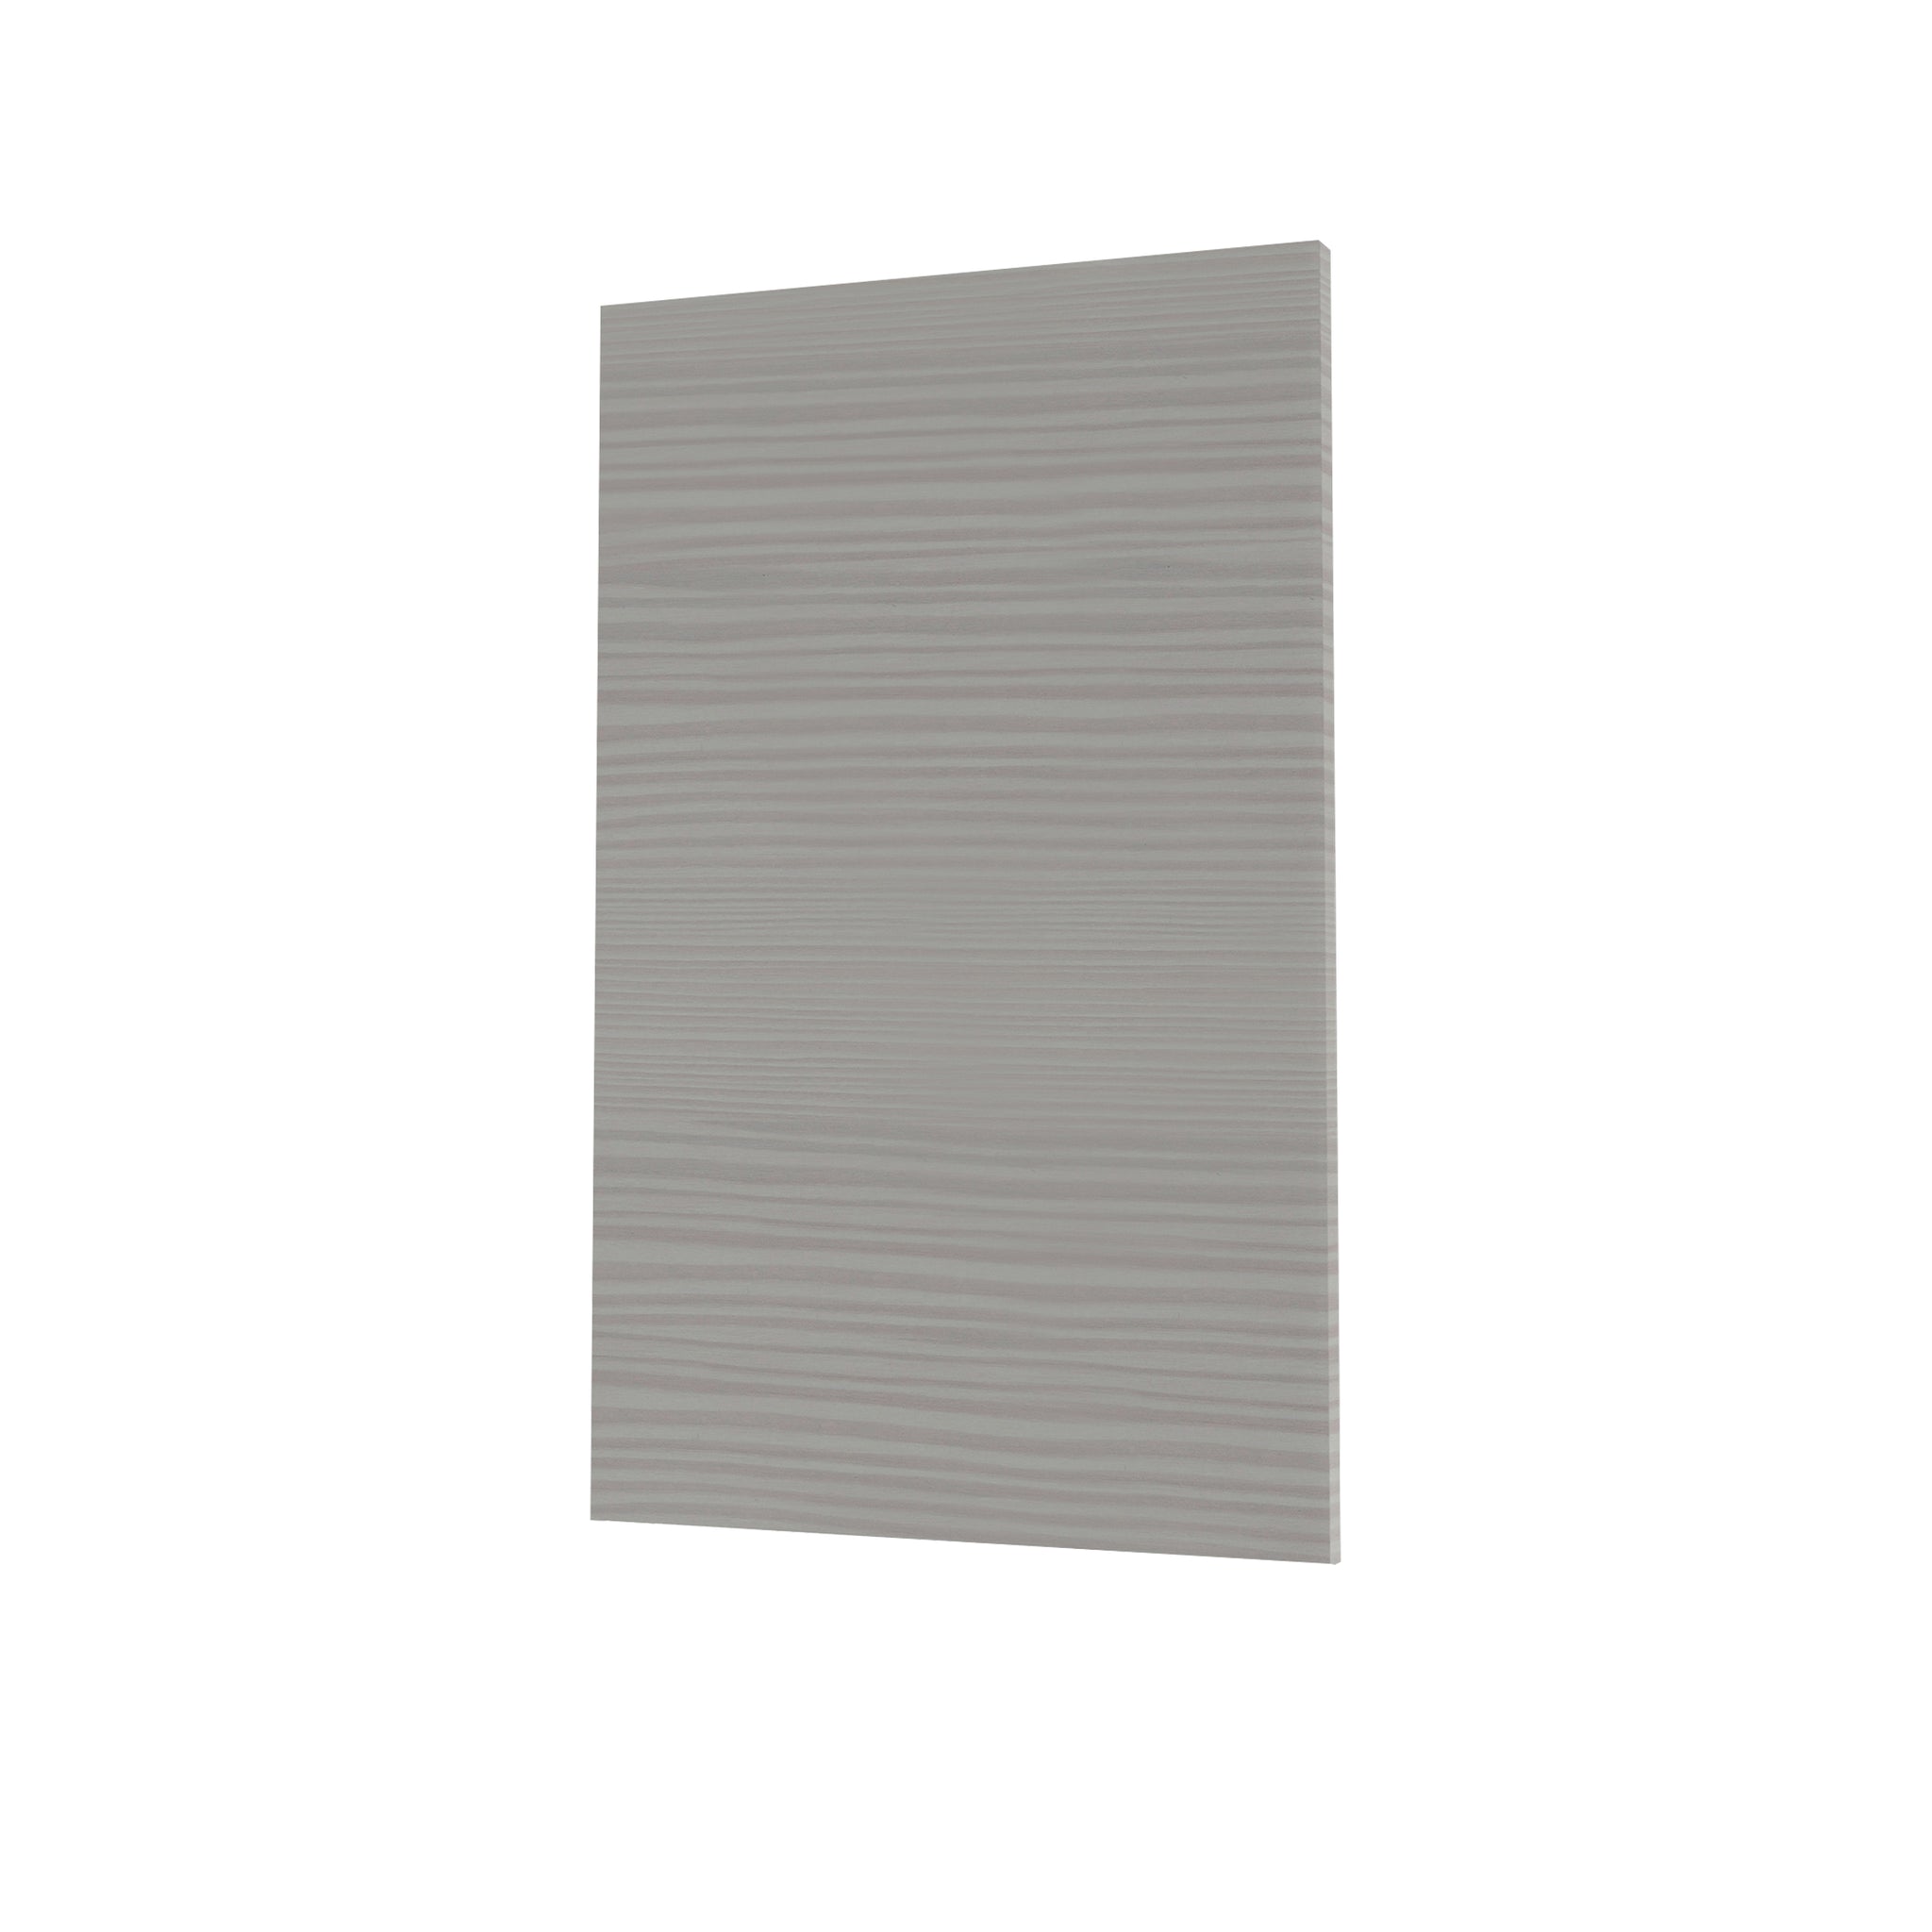 RTA - Pale Pine - Base End Panels | 0.6"W x 30"H x 24"D